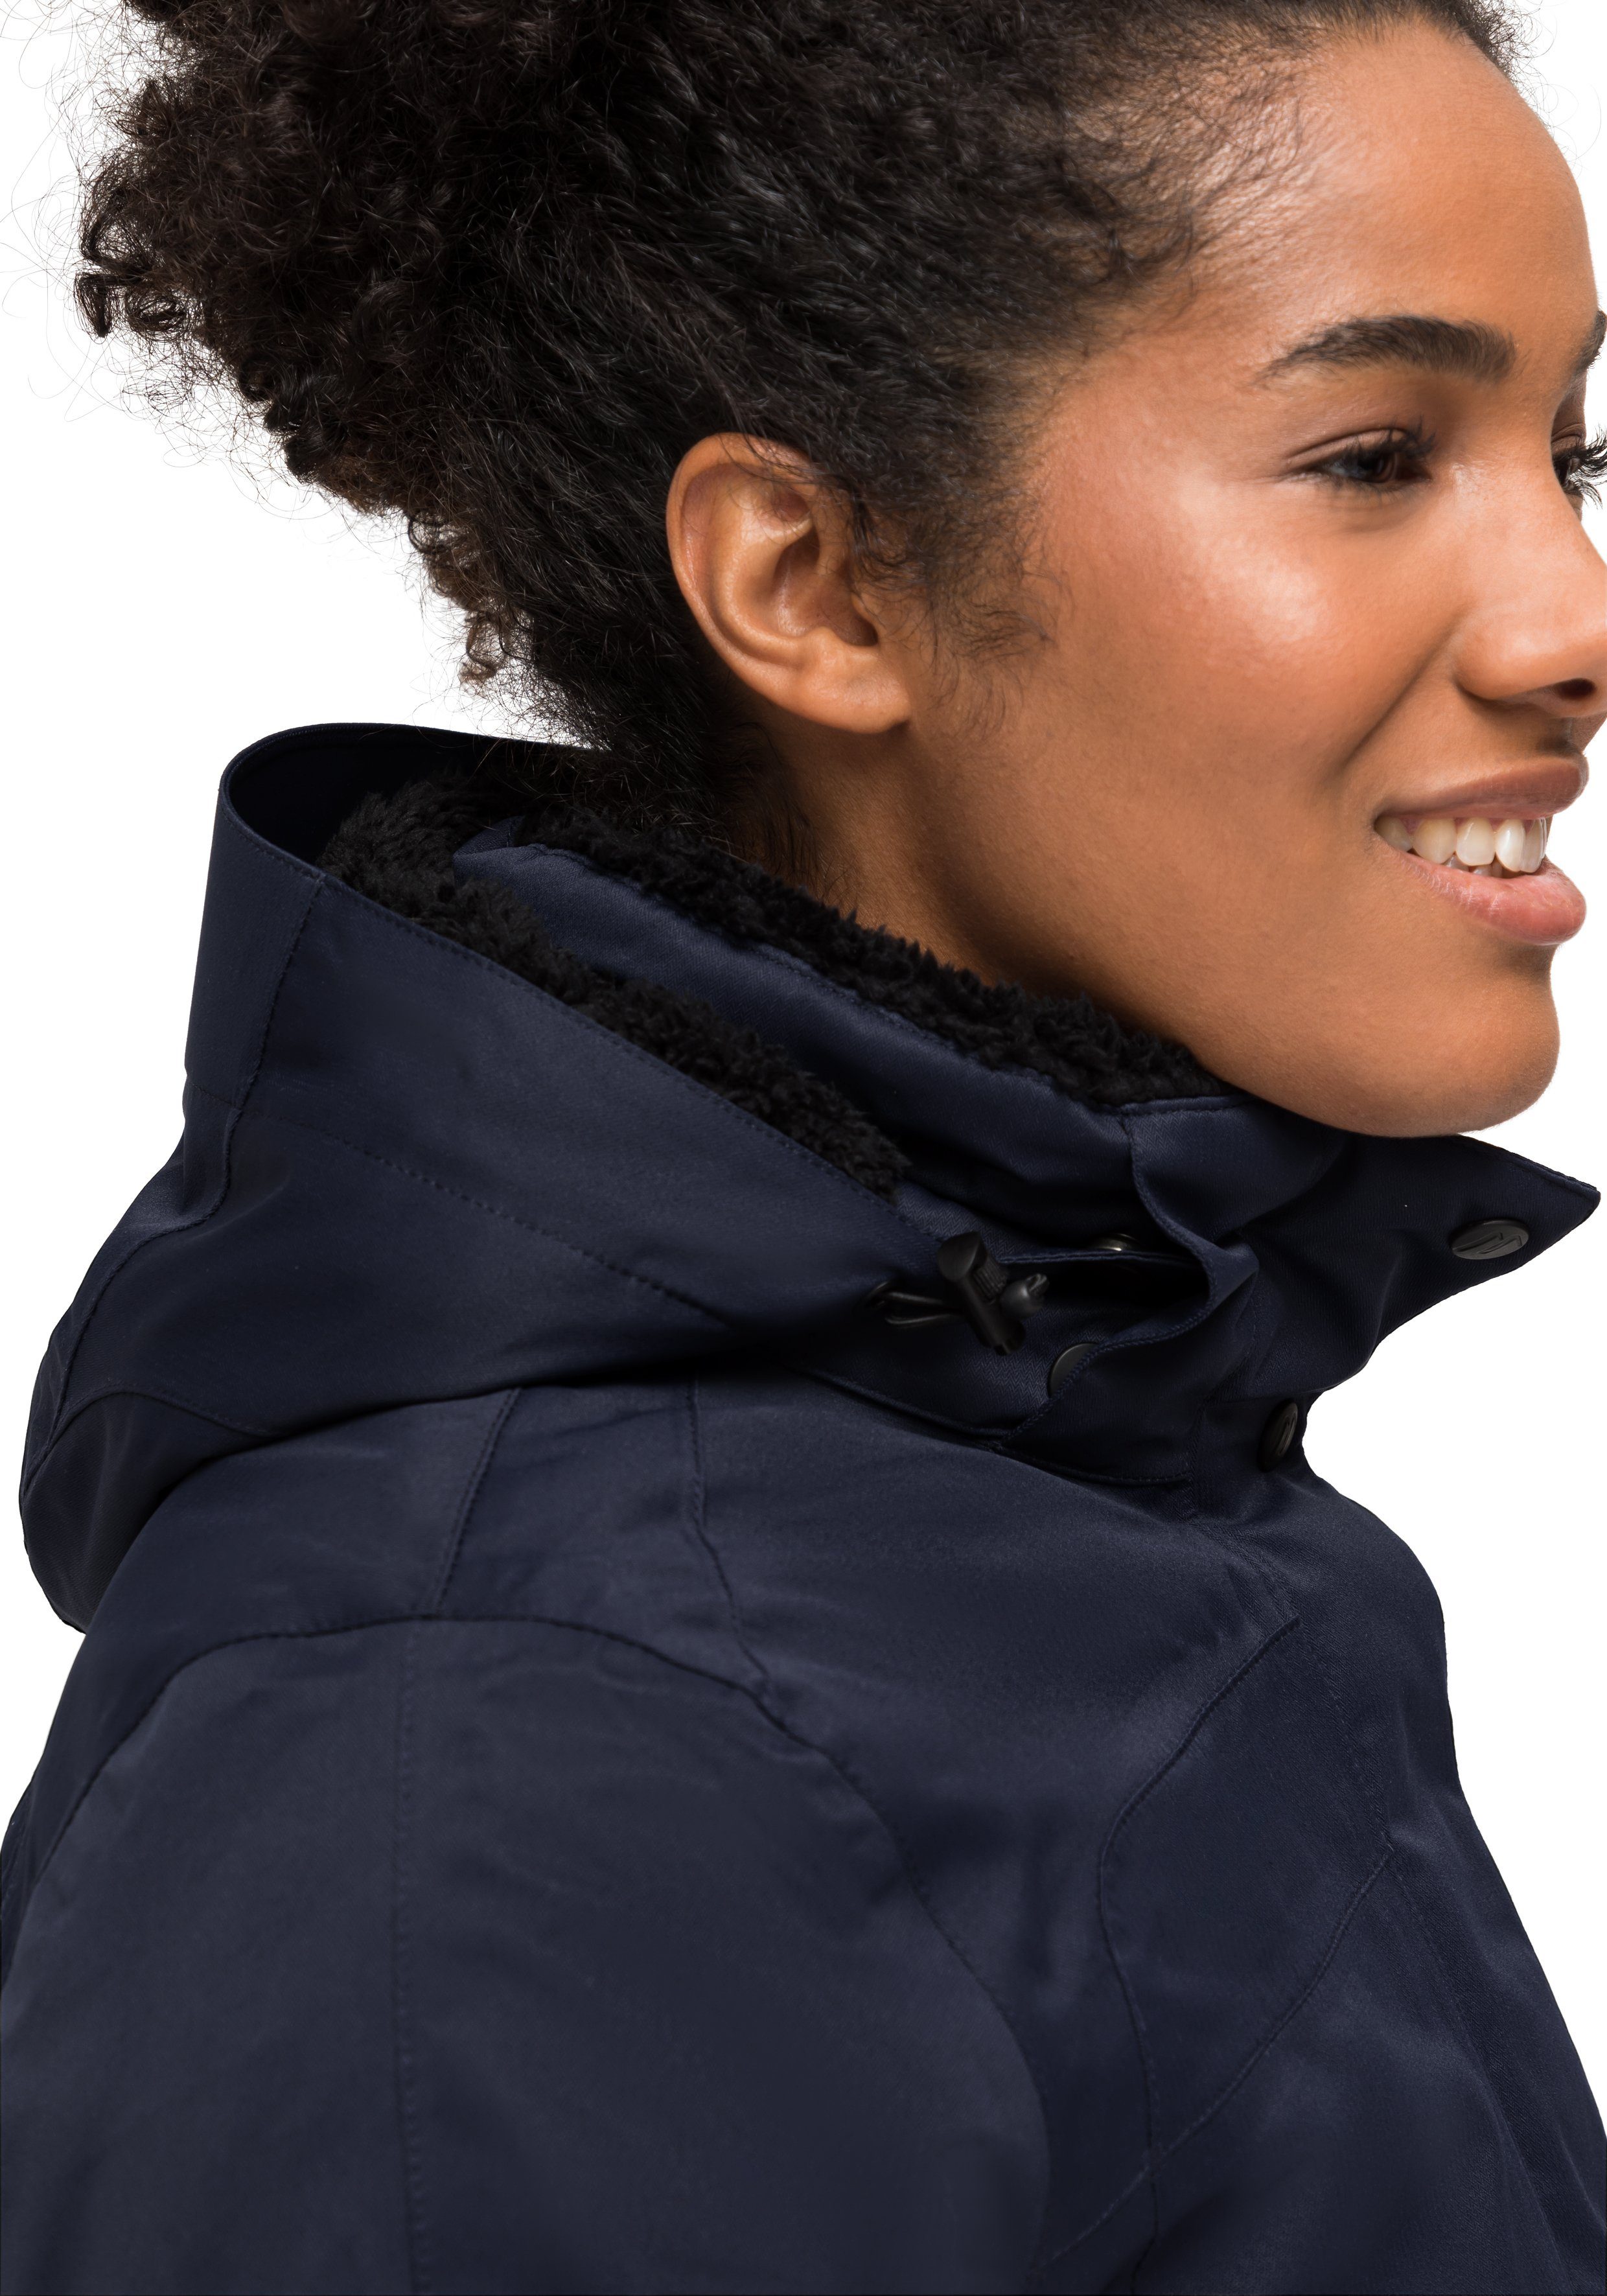 Maier Sports Wetterschutz Outdoor-Mantel Lisa 2 Funktionsjacke dunkelblau vollem mit